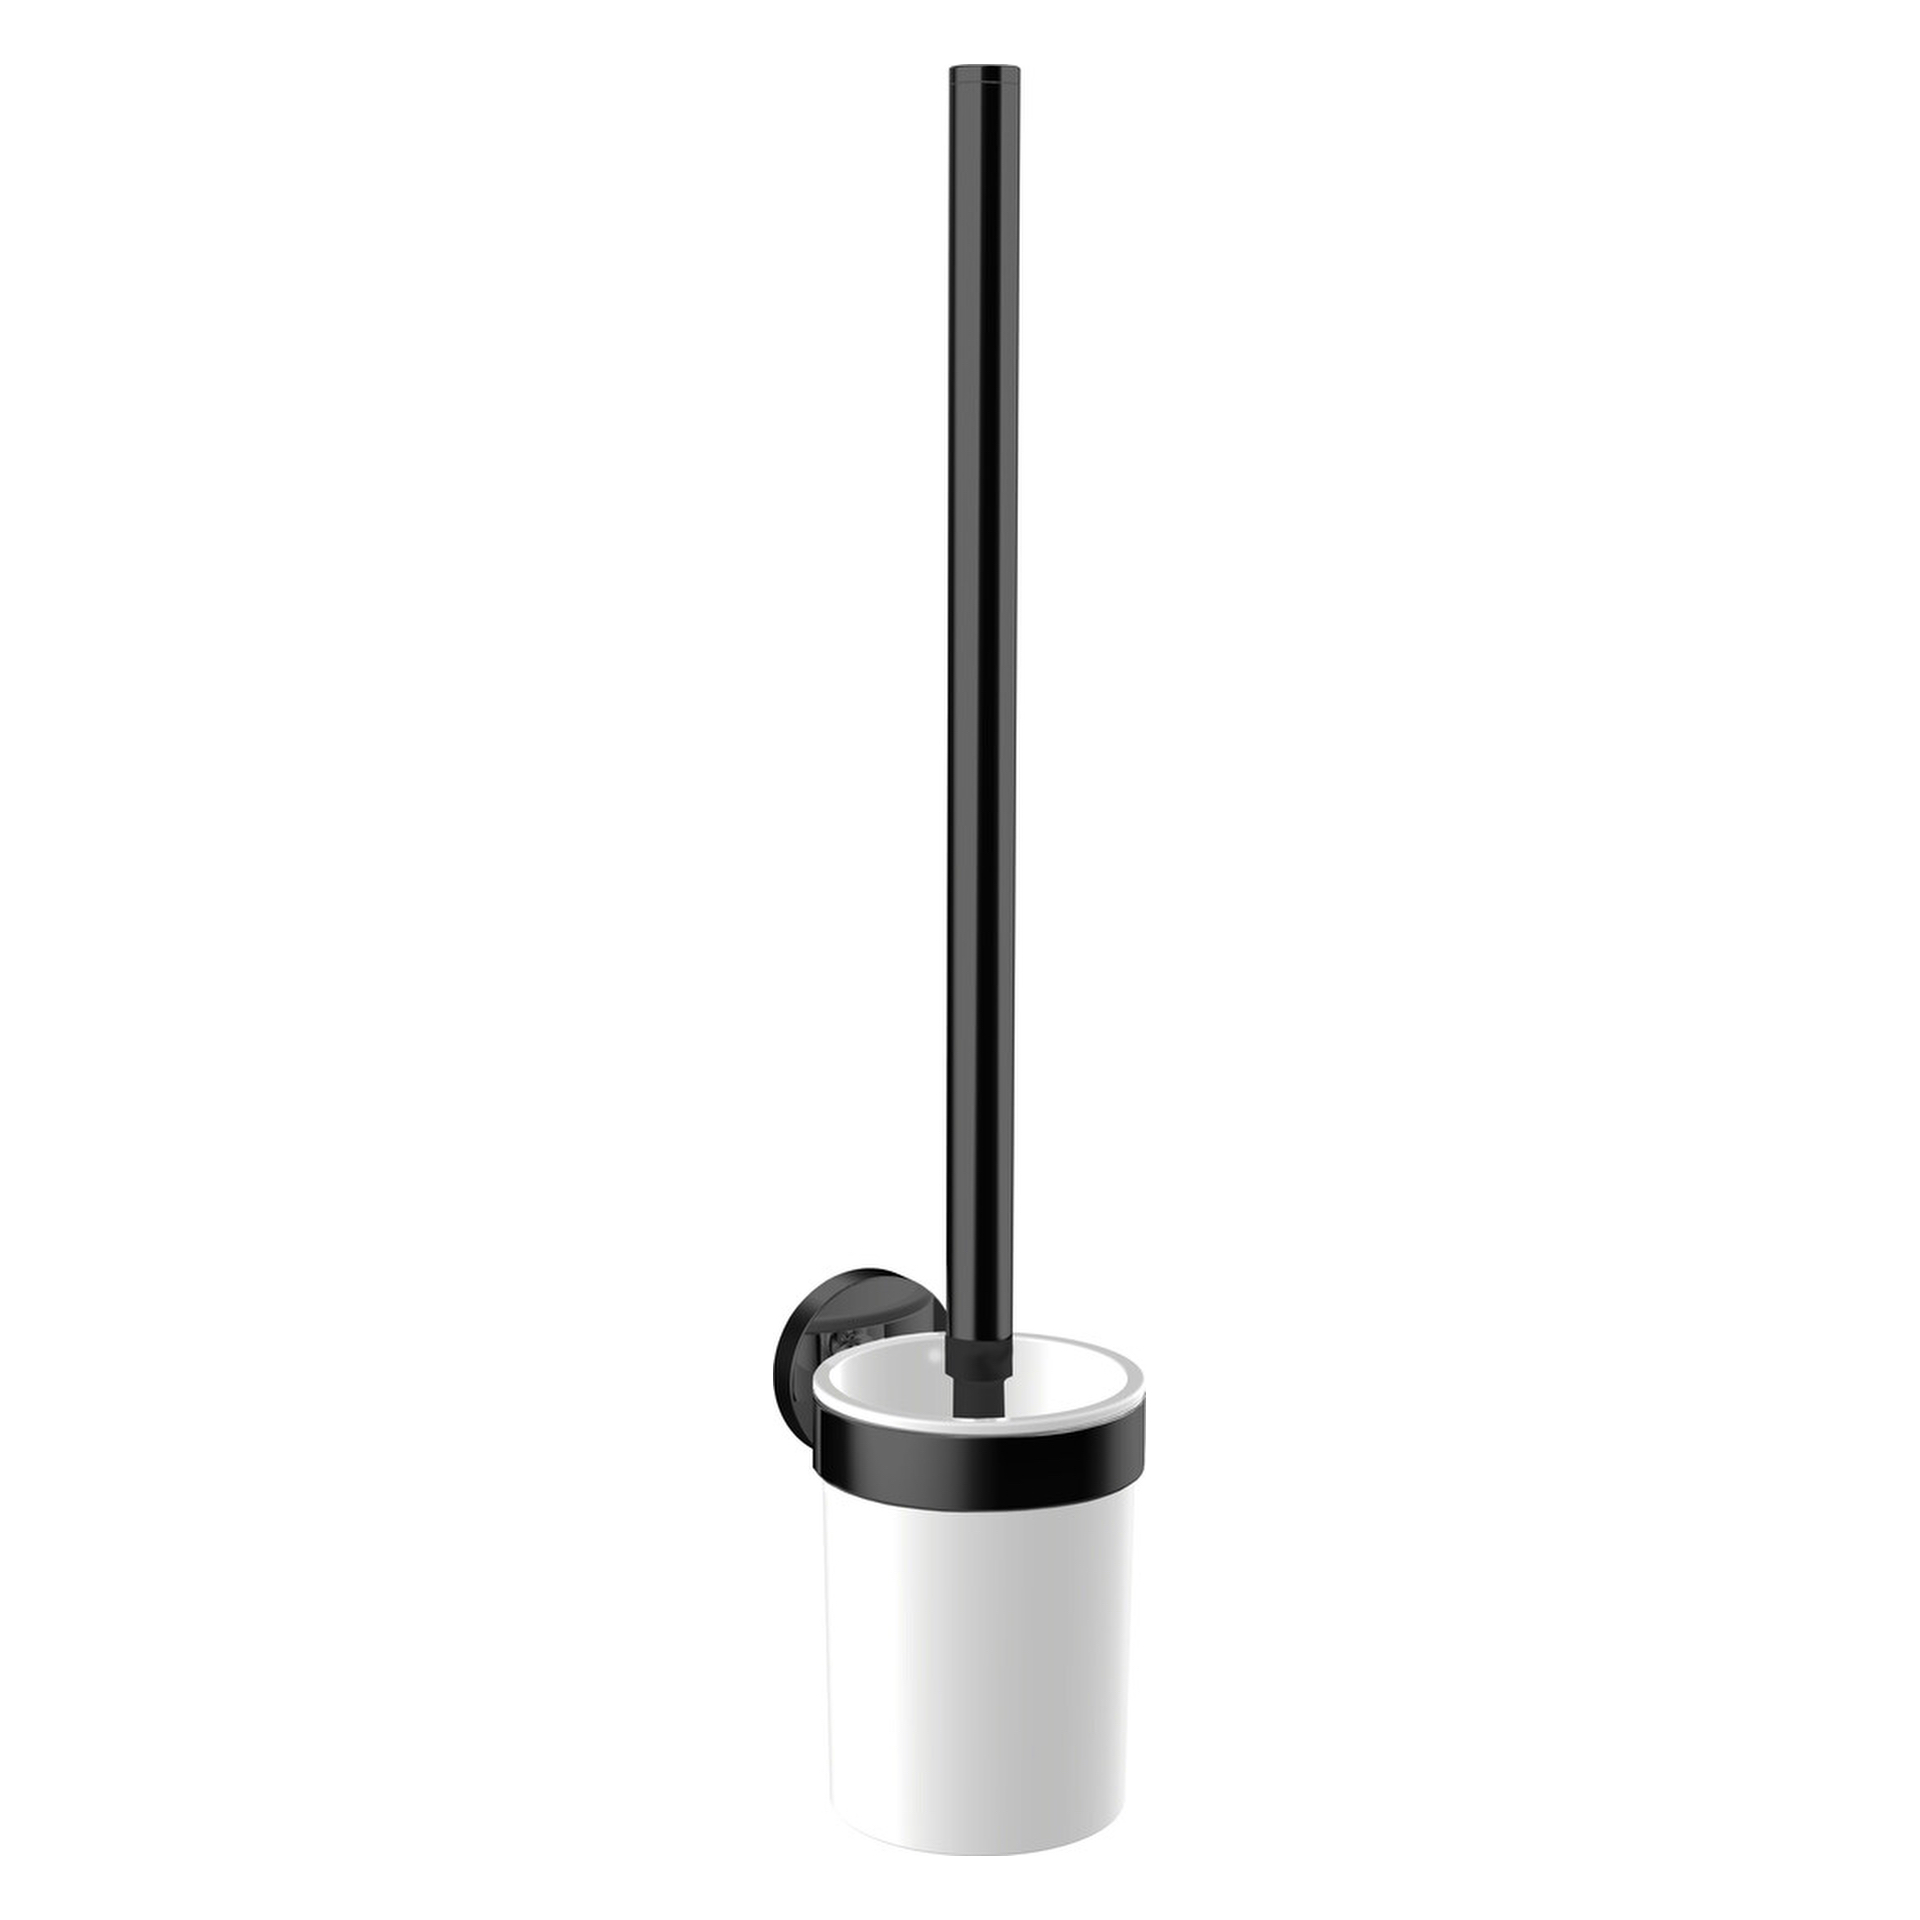 emco Toilettenbürstengarnitur „round“ in weiß / schwarz, Befestigung verdeckt